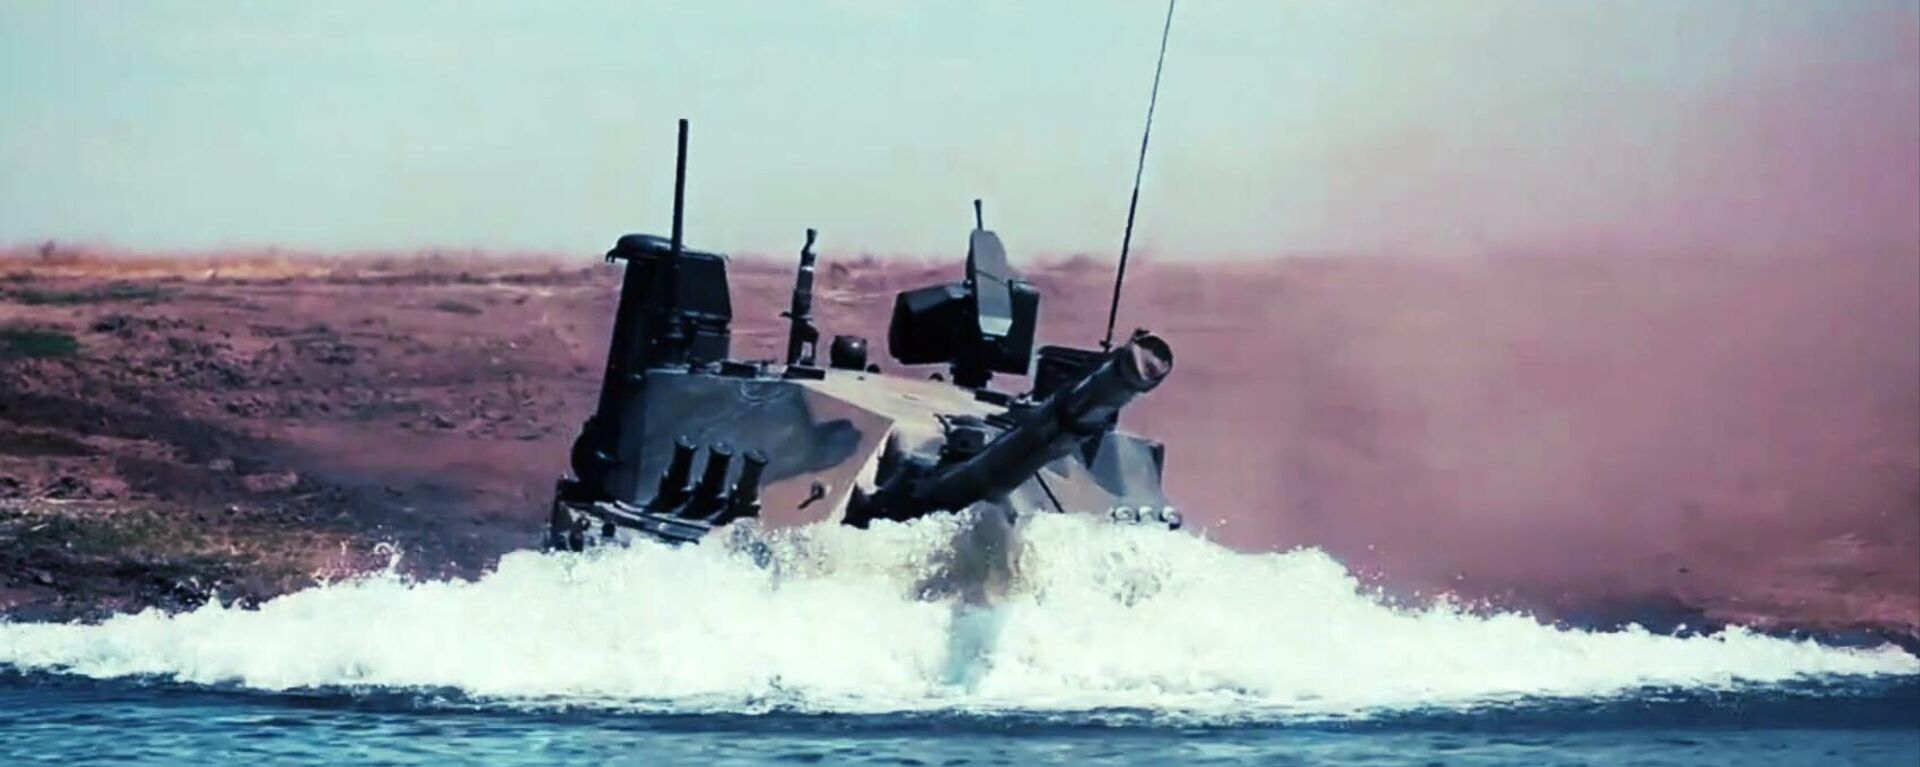 Единственный в мире легкий плавающий танк Спрут-СДМ1 во время испытаний в акватории Черного моря - Sputnik Латвия, 1920, 23.07.2021